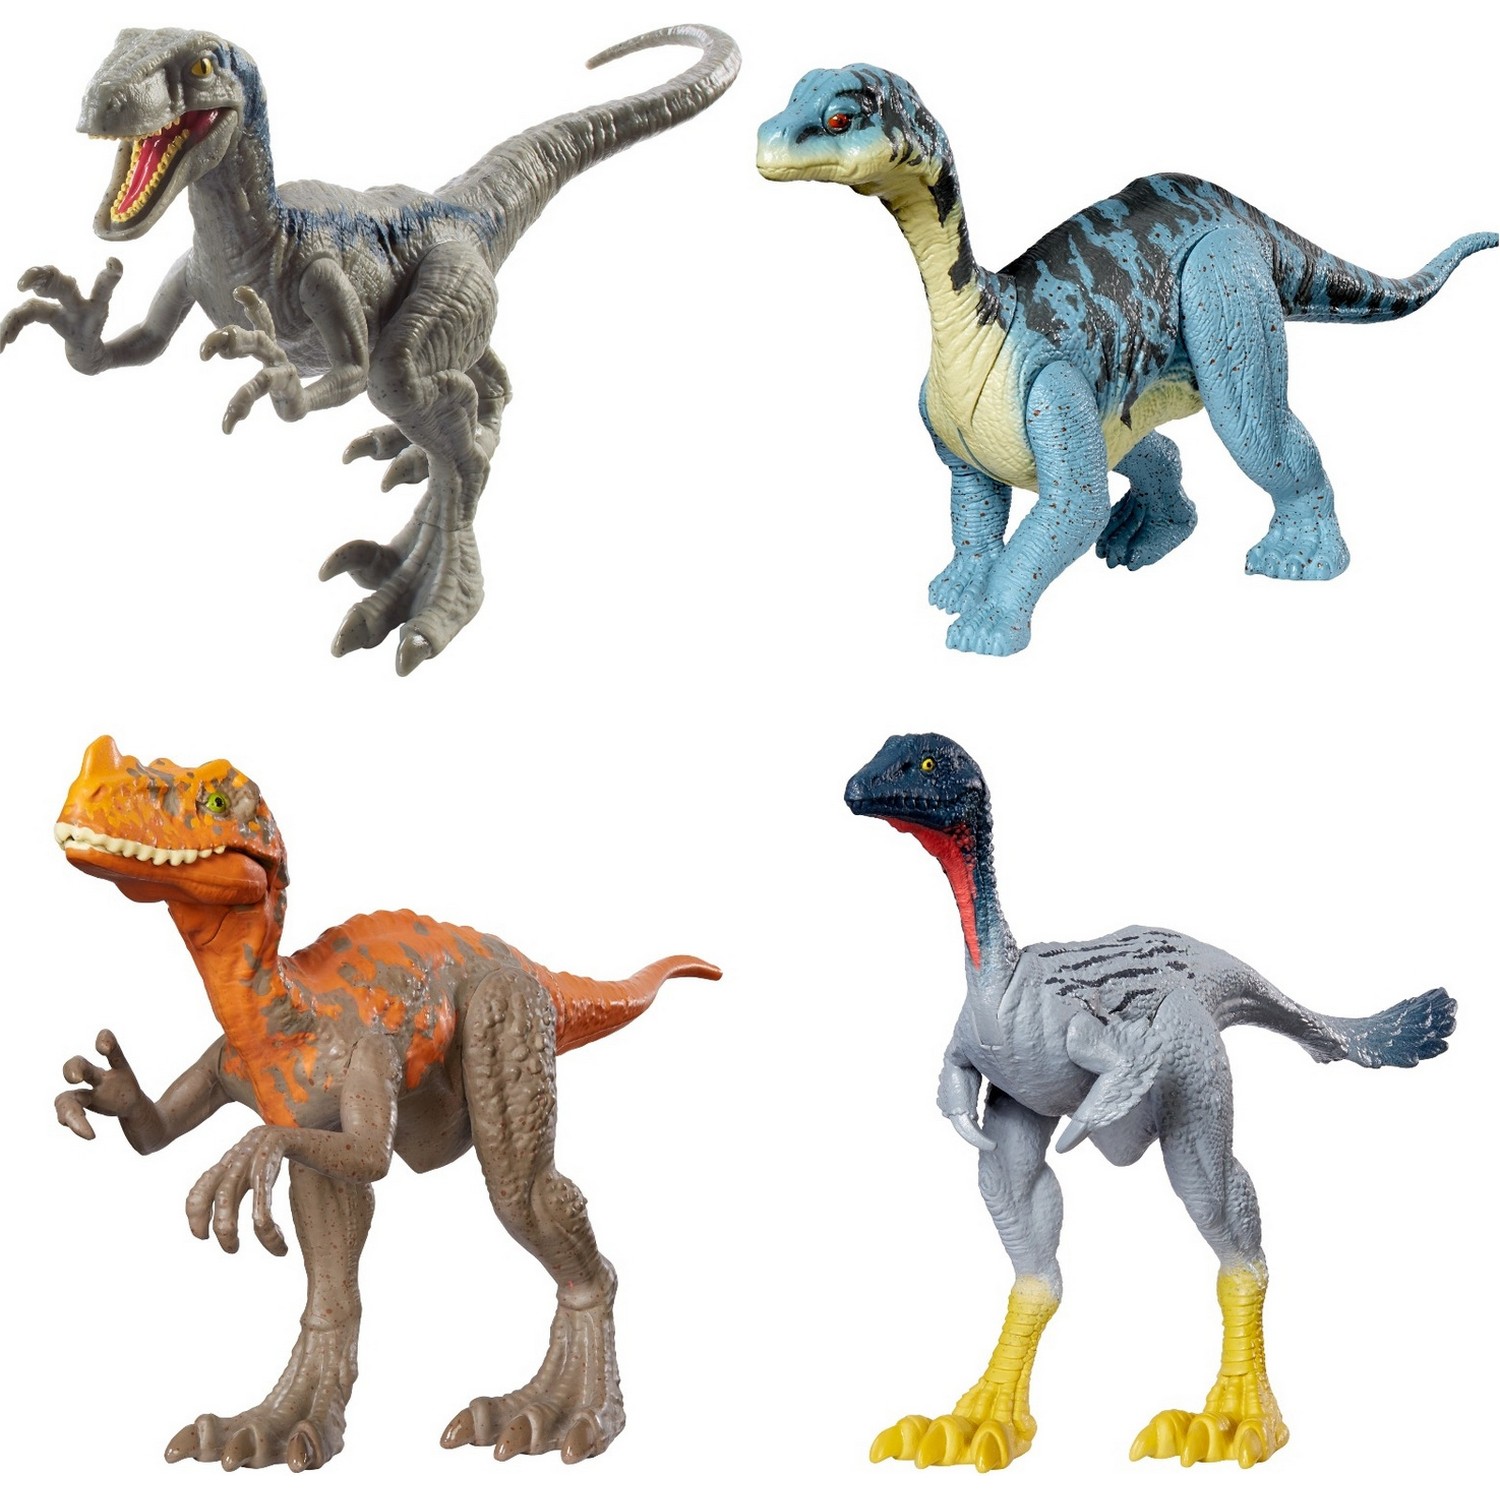 Мир динозавров игрушка. Динозавры Юрасик ворлд игрушки. Игрушки Mattel джурасик ворлд. Дилофозавр игрушка Jurassic World. Детский мир динозавры Jurassic World.